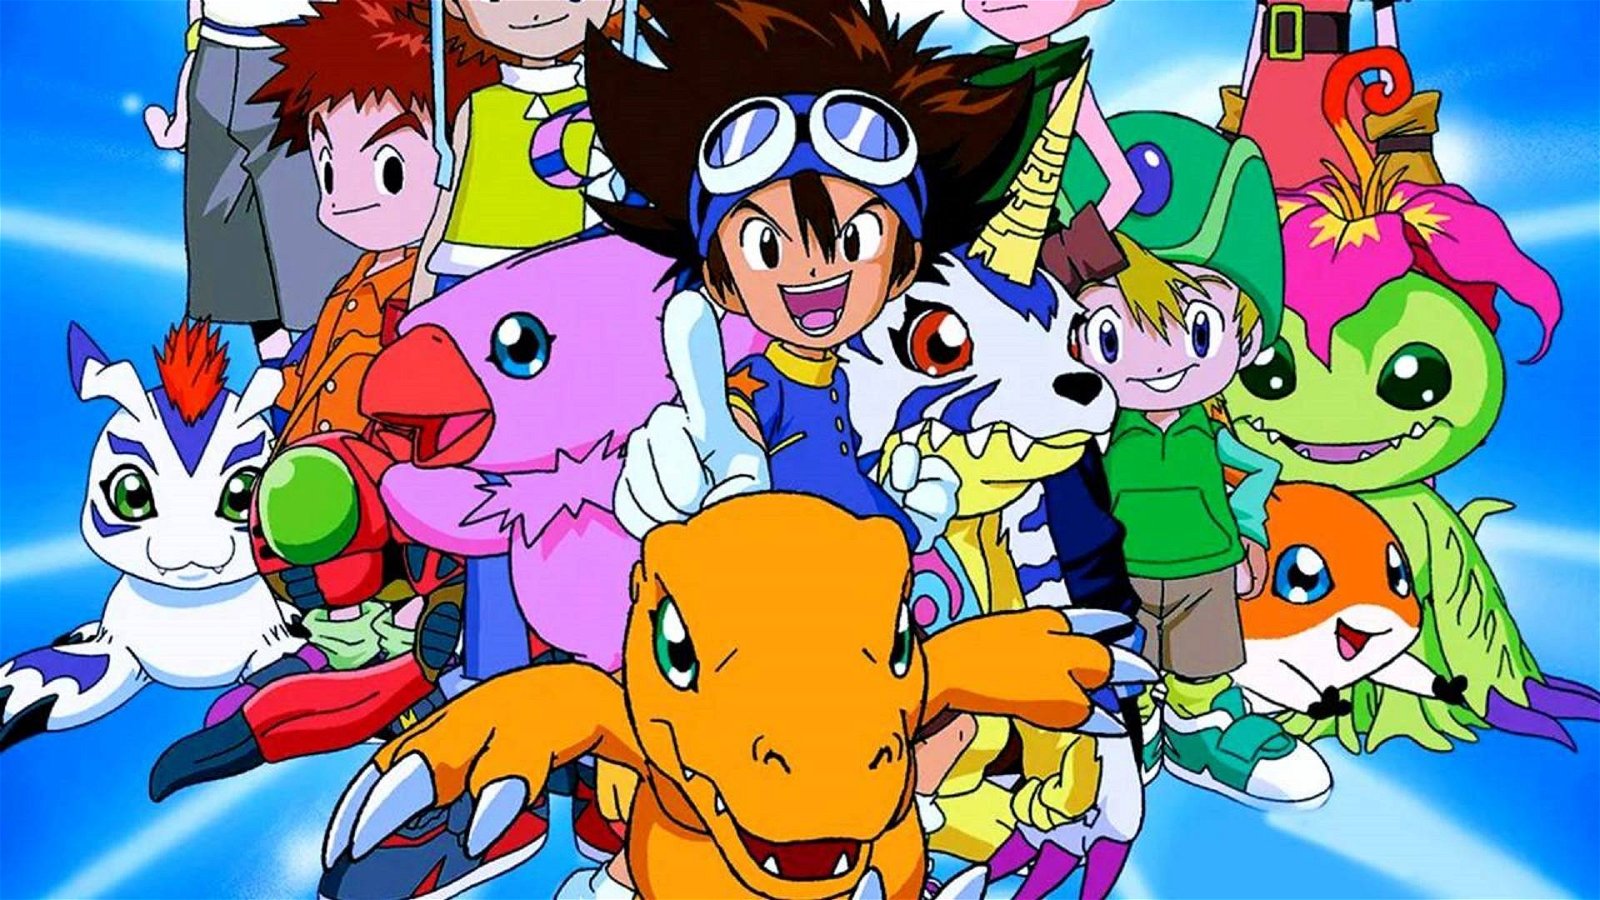 Immagine di Digimon - Disney pensa ad un live action?